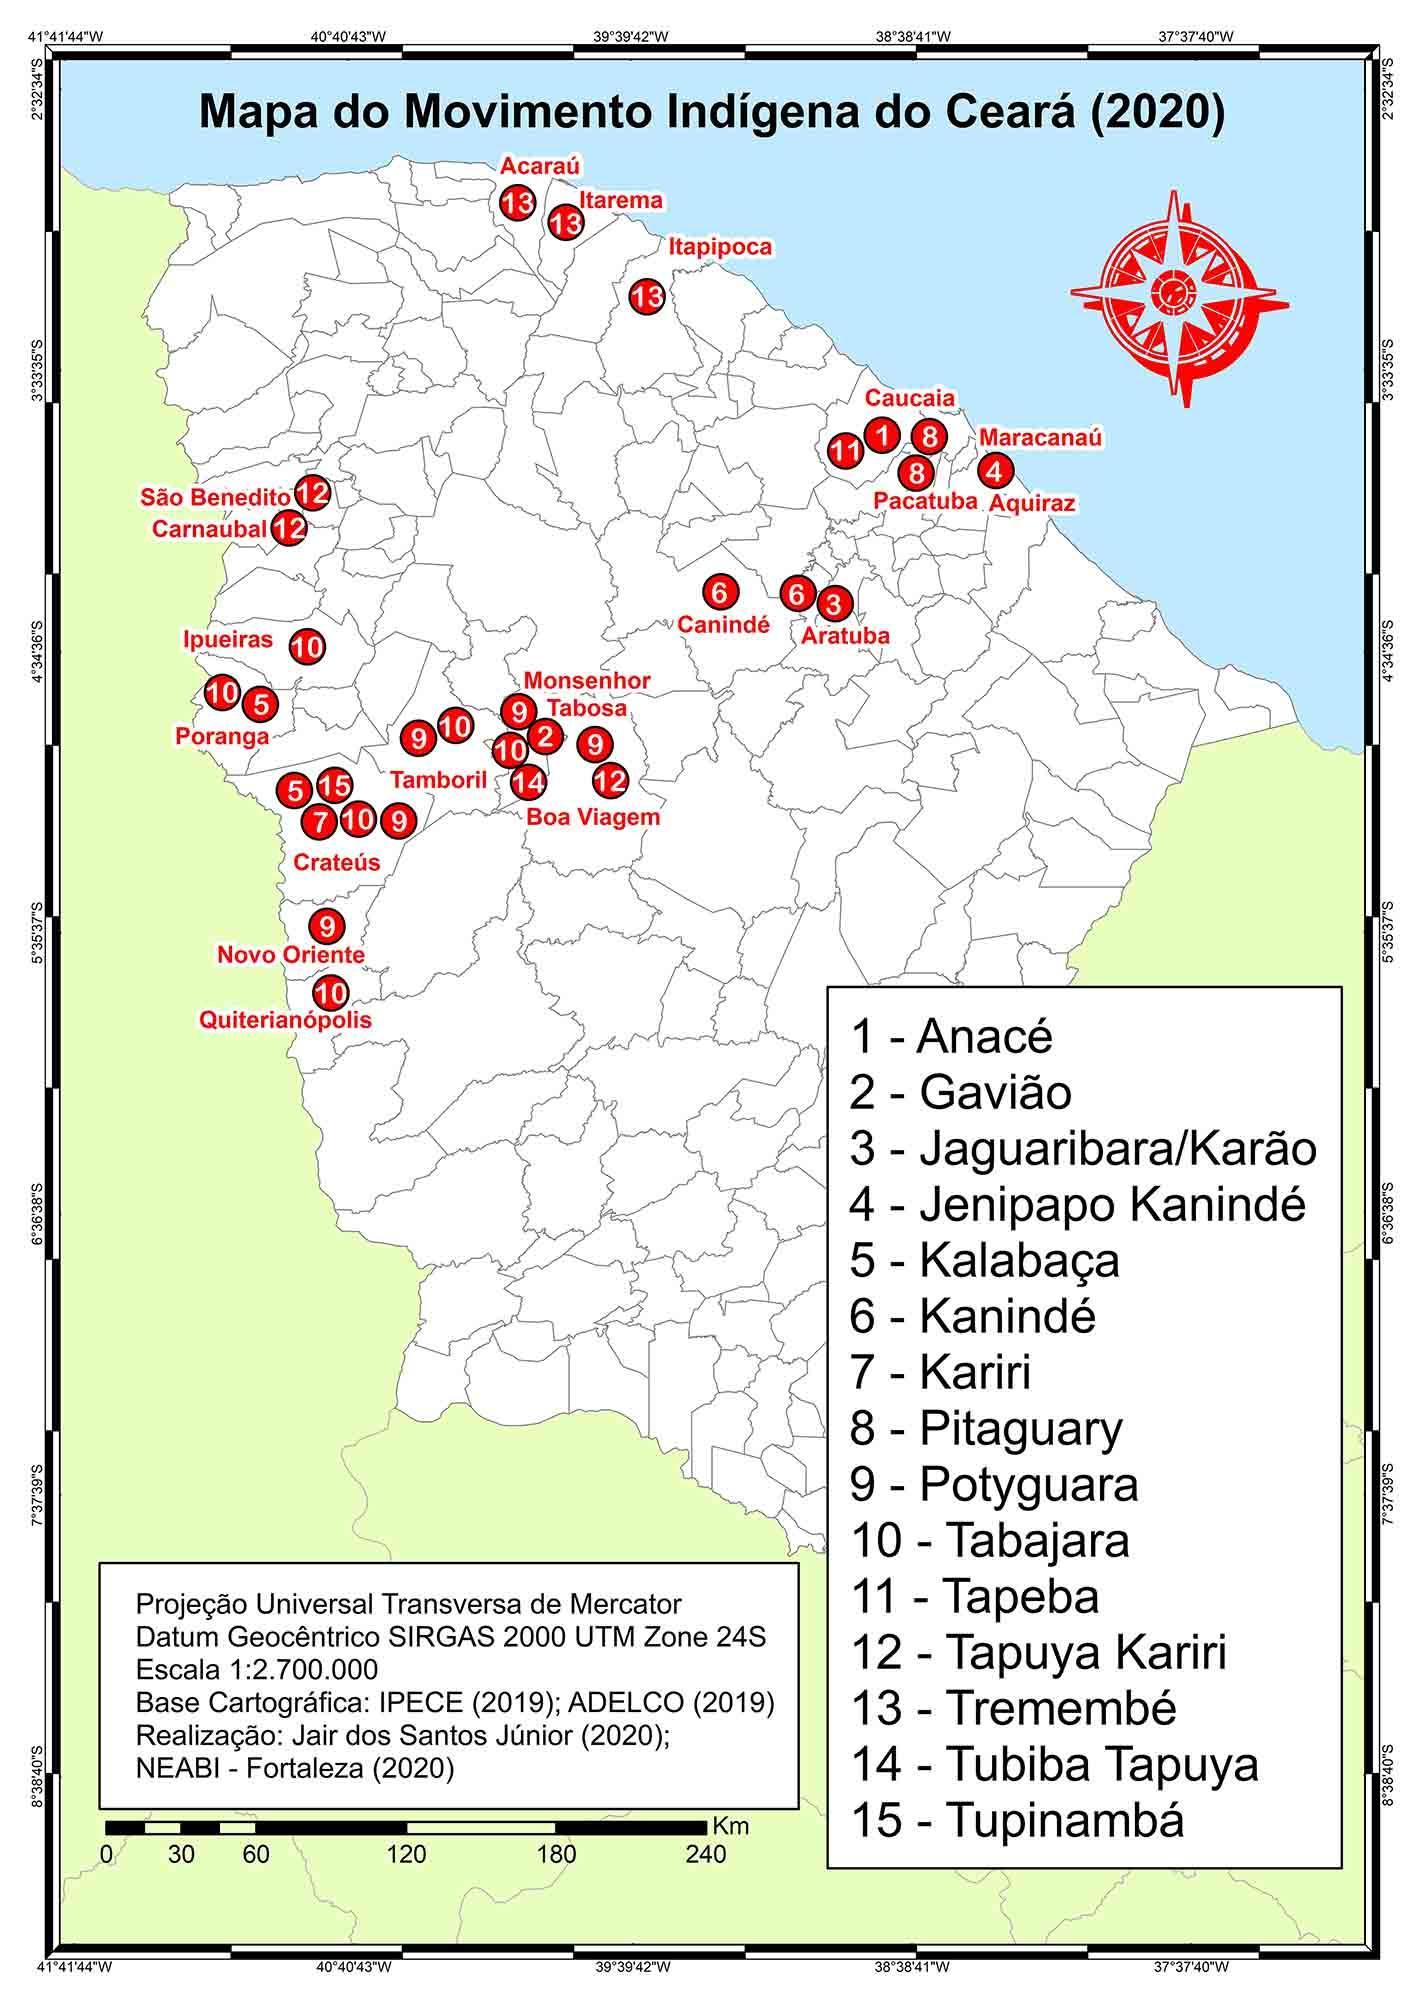 Mapa do Movimento
Indígena do Ceará